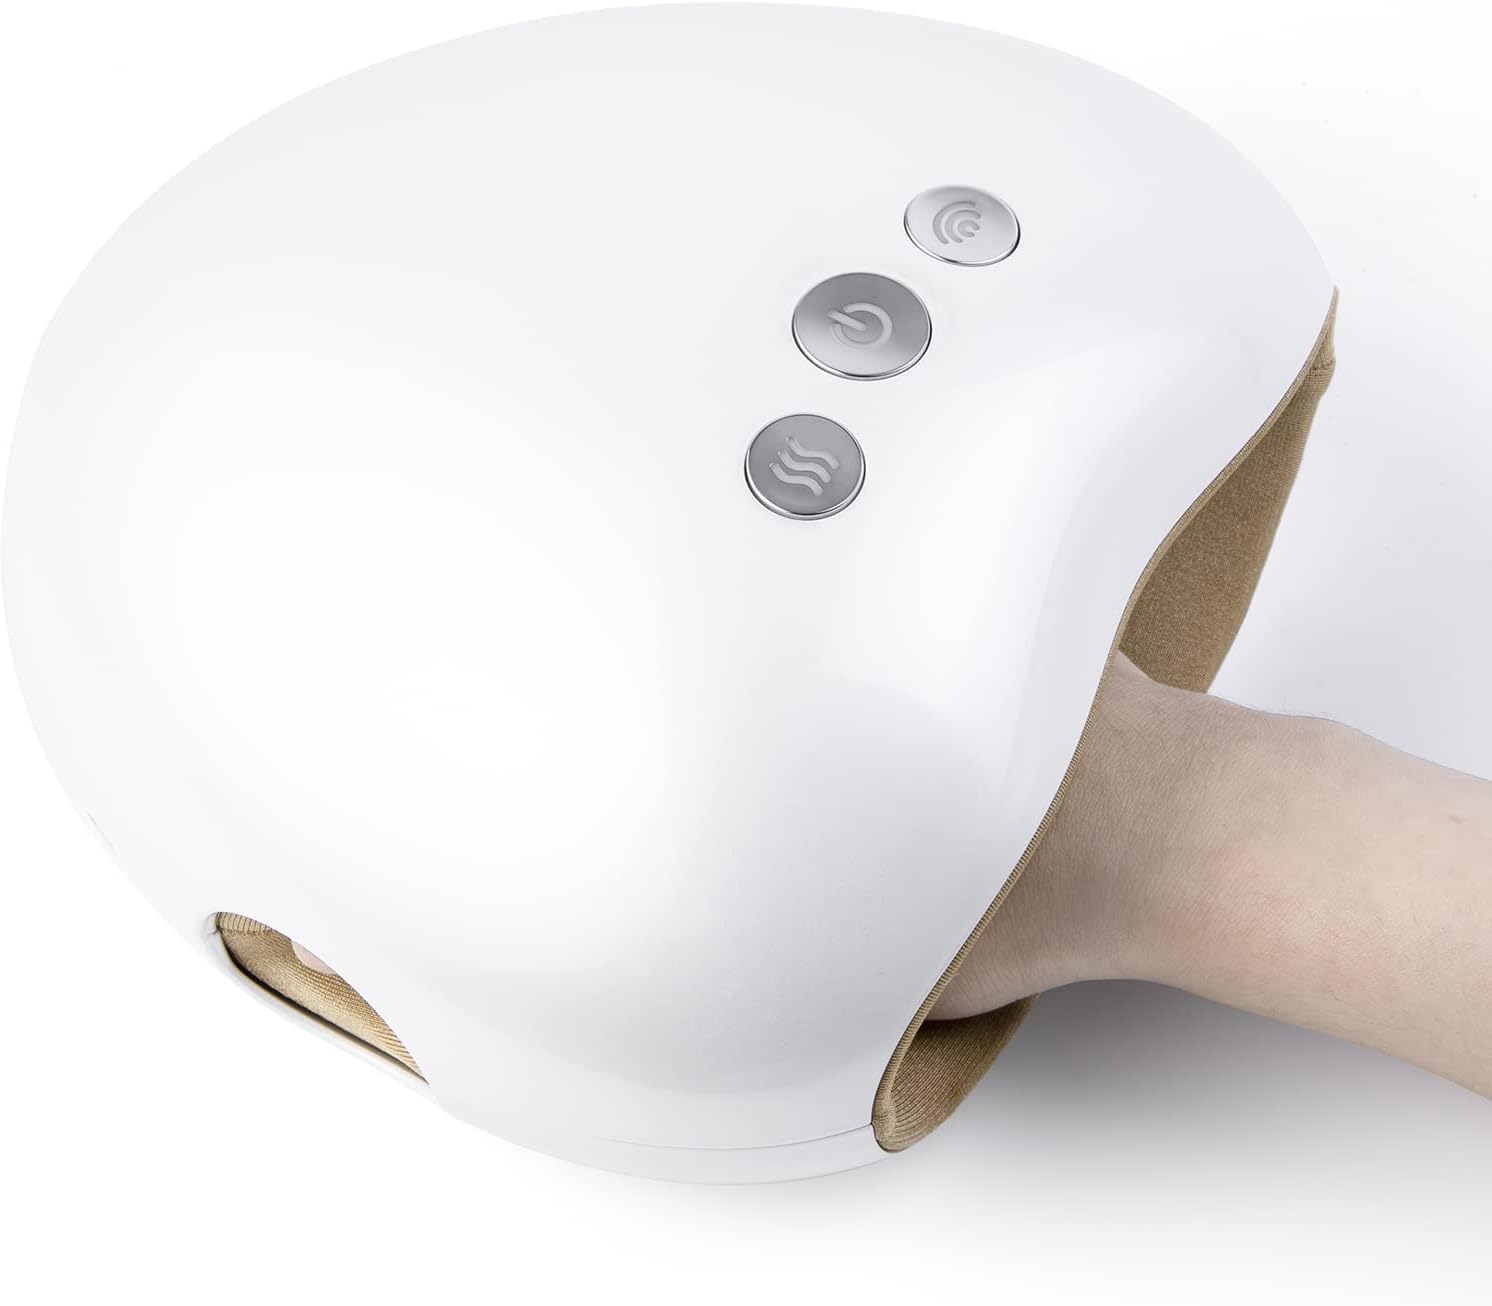 ماساژور دست برقی با گرمایش فشرده مدل Hand Massager Cordless Electric - ارسال 10 الی 15 روز کاری